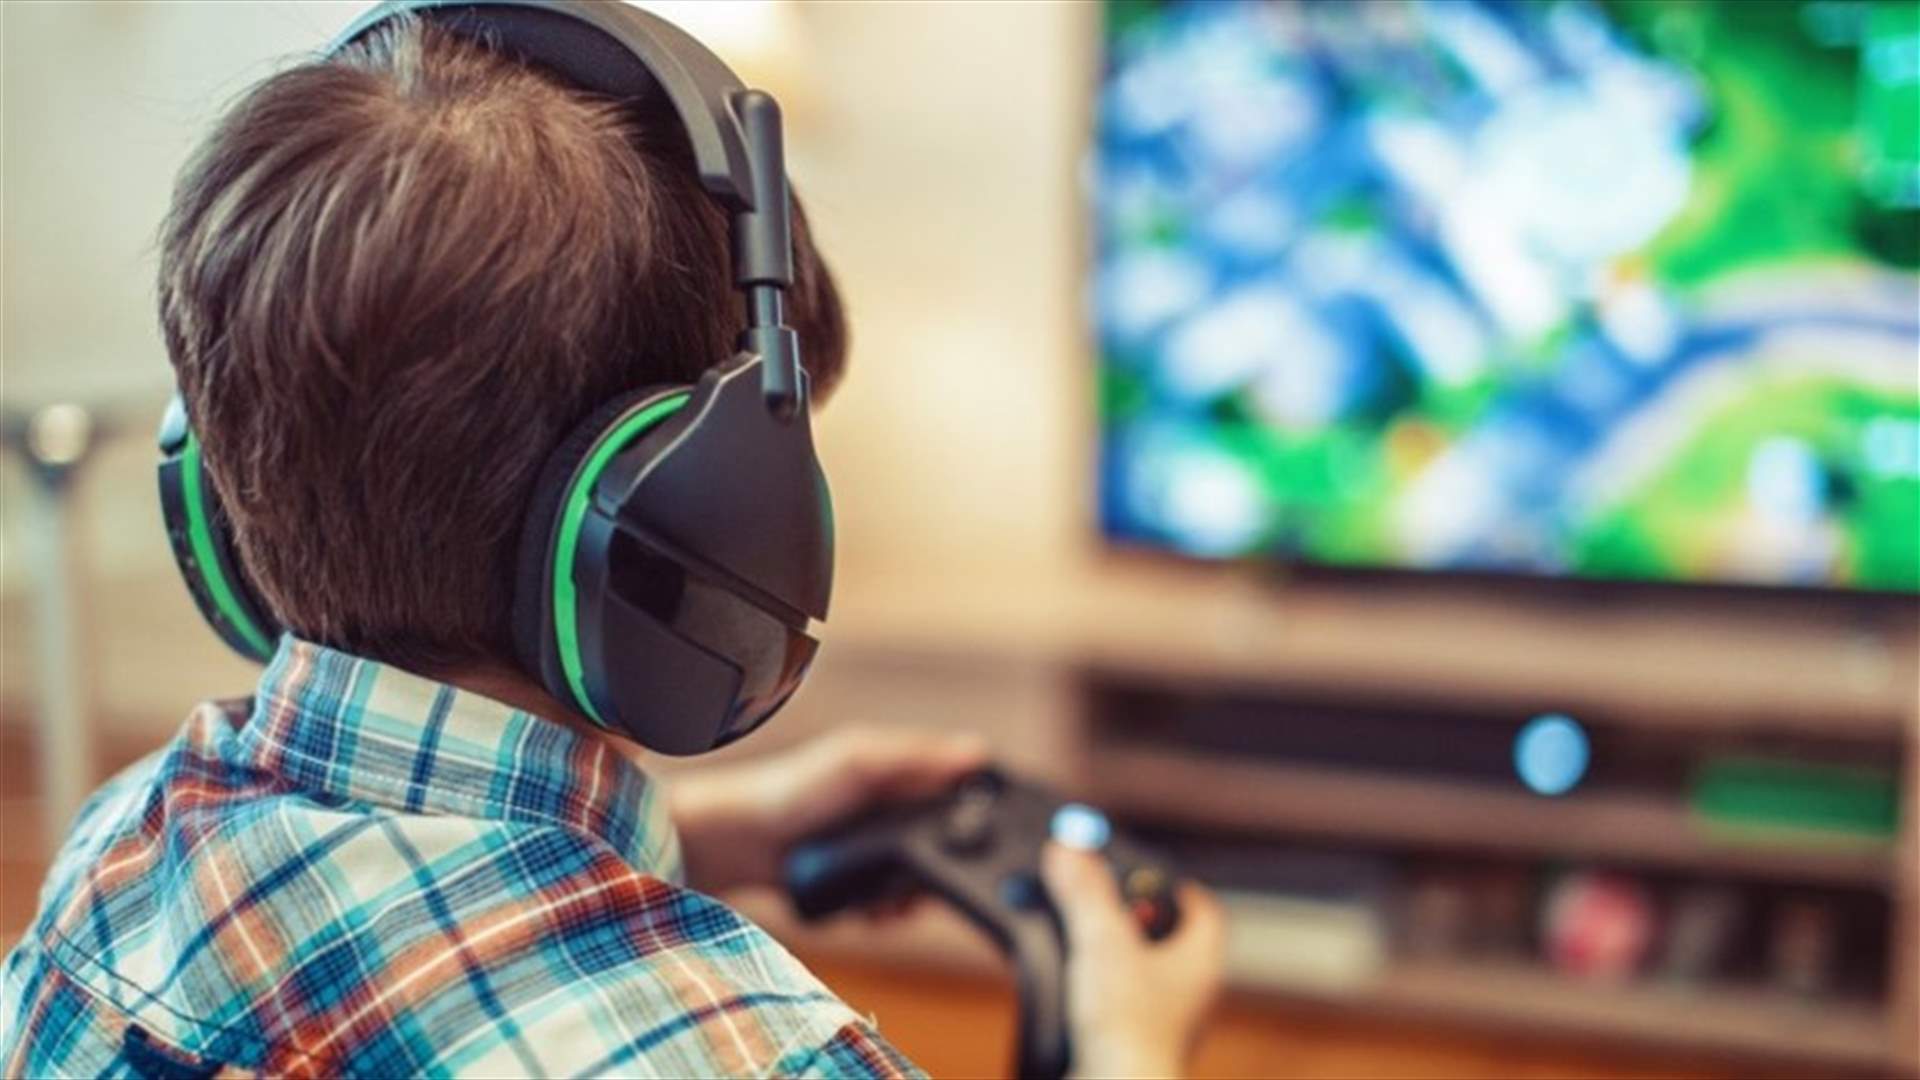 دراسة تحذّر... ما العلاقة بين ألعاب الفيديو واضطراب الوسواس القهري لدى الأطفال؟